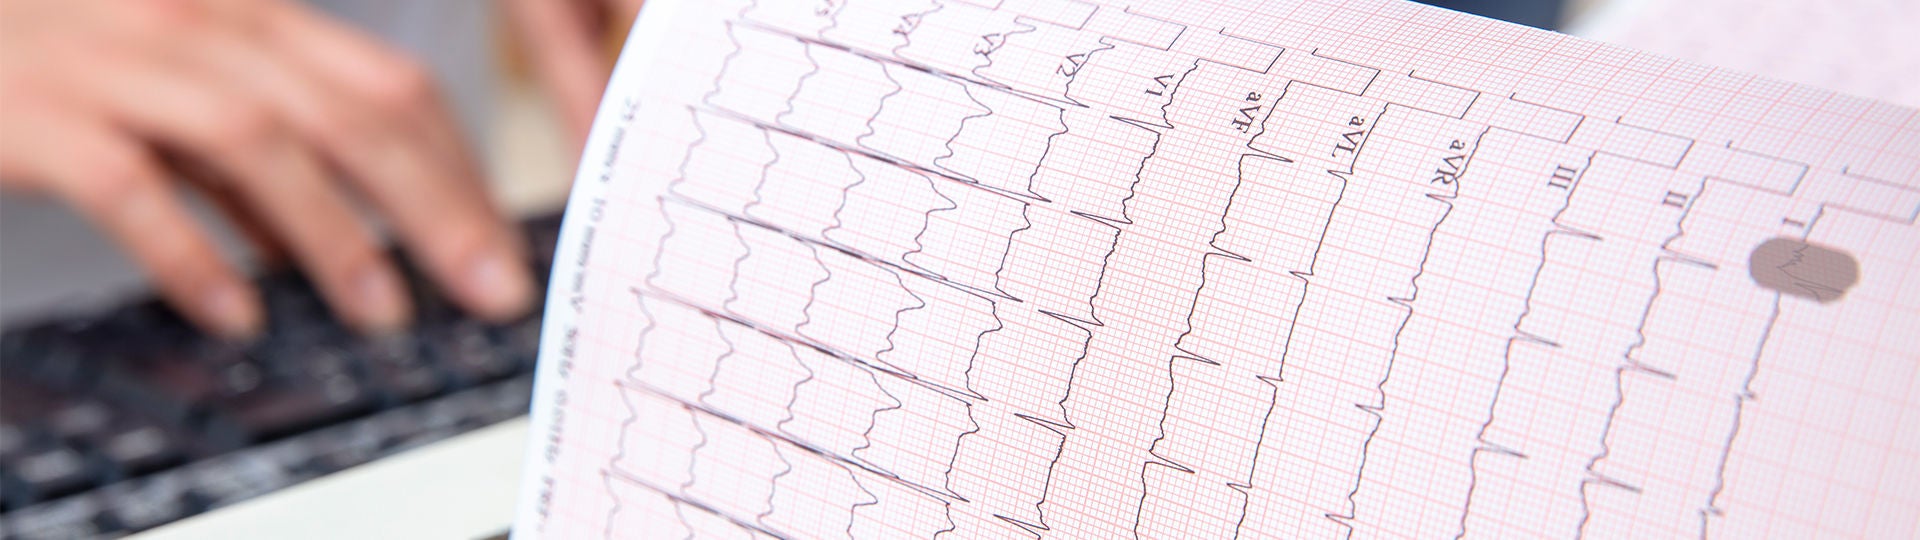 Ein EKG zeigt die elektrische Erregung des Herzens.